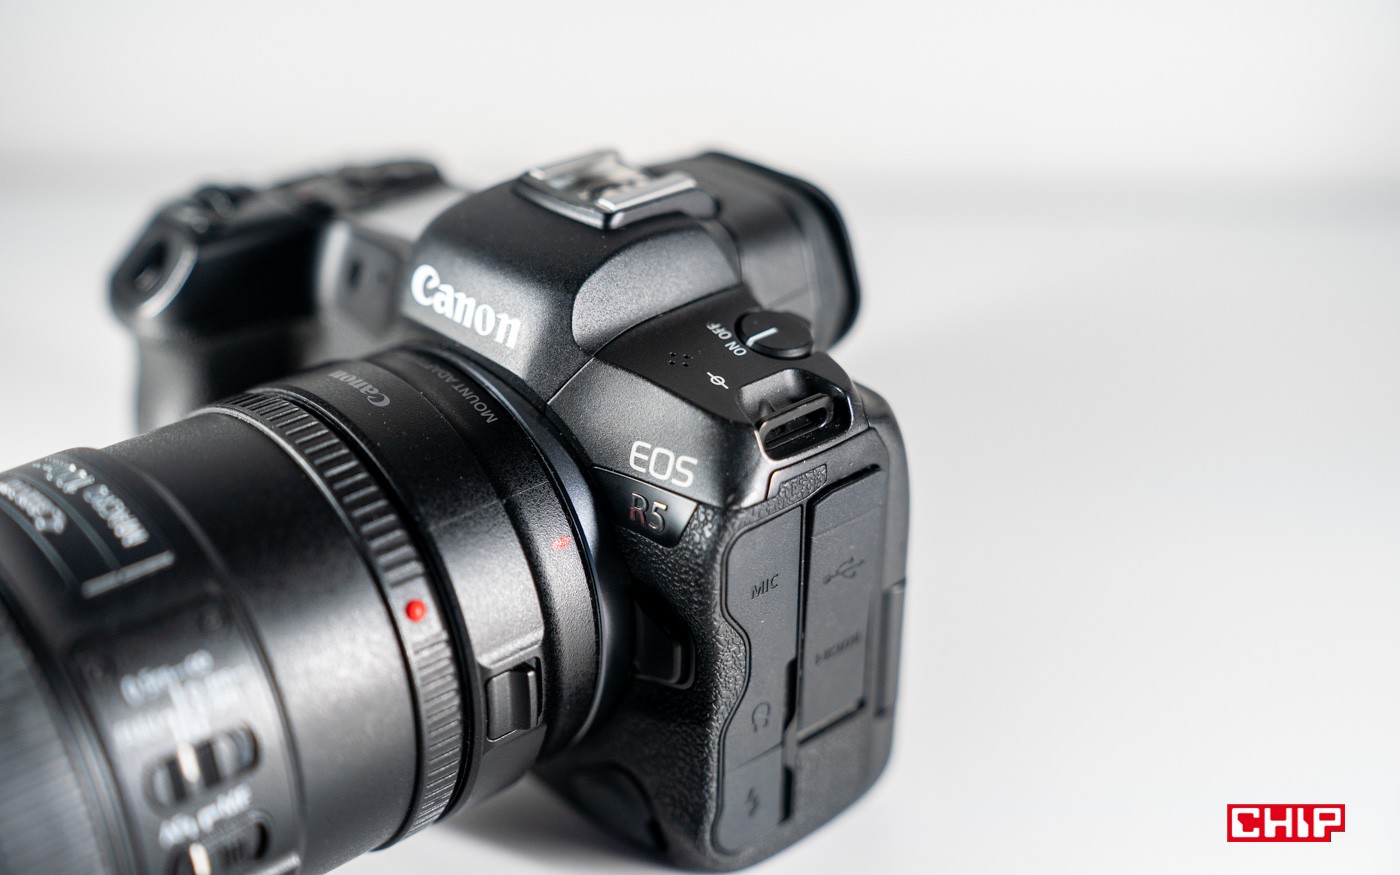 Canon EOS R5 to aparat z innego świata. Tak dobrego sprzętu jeszcze nie używałem